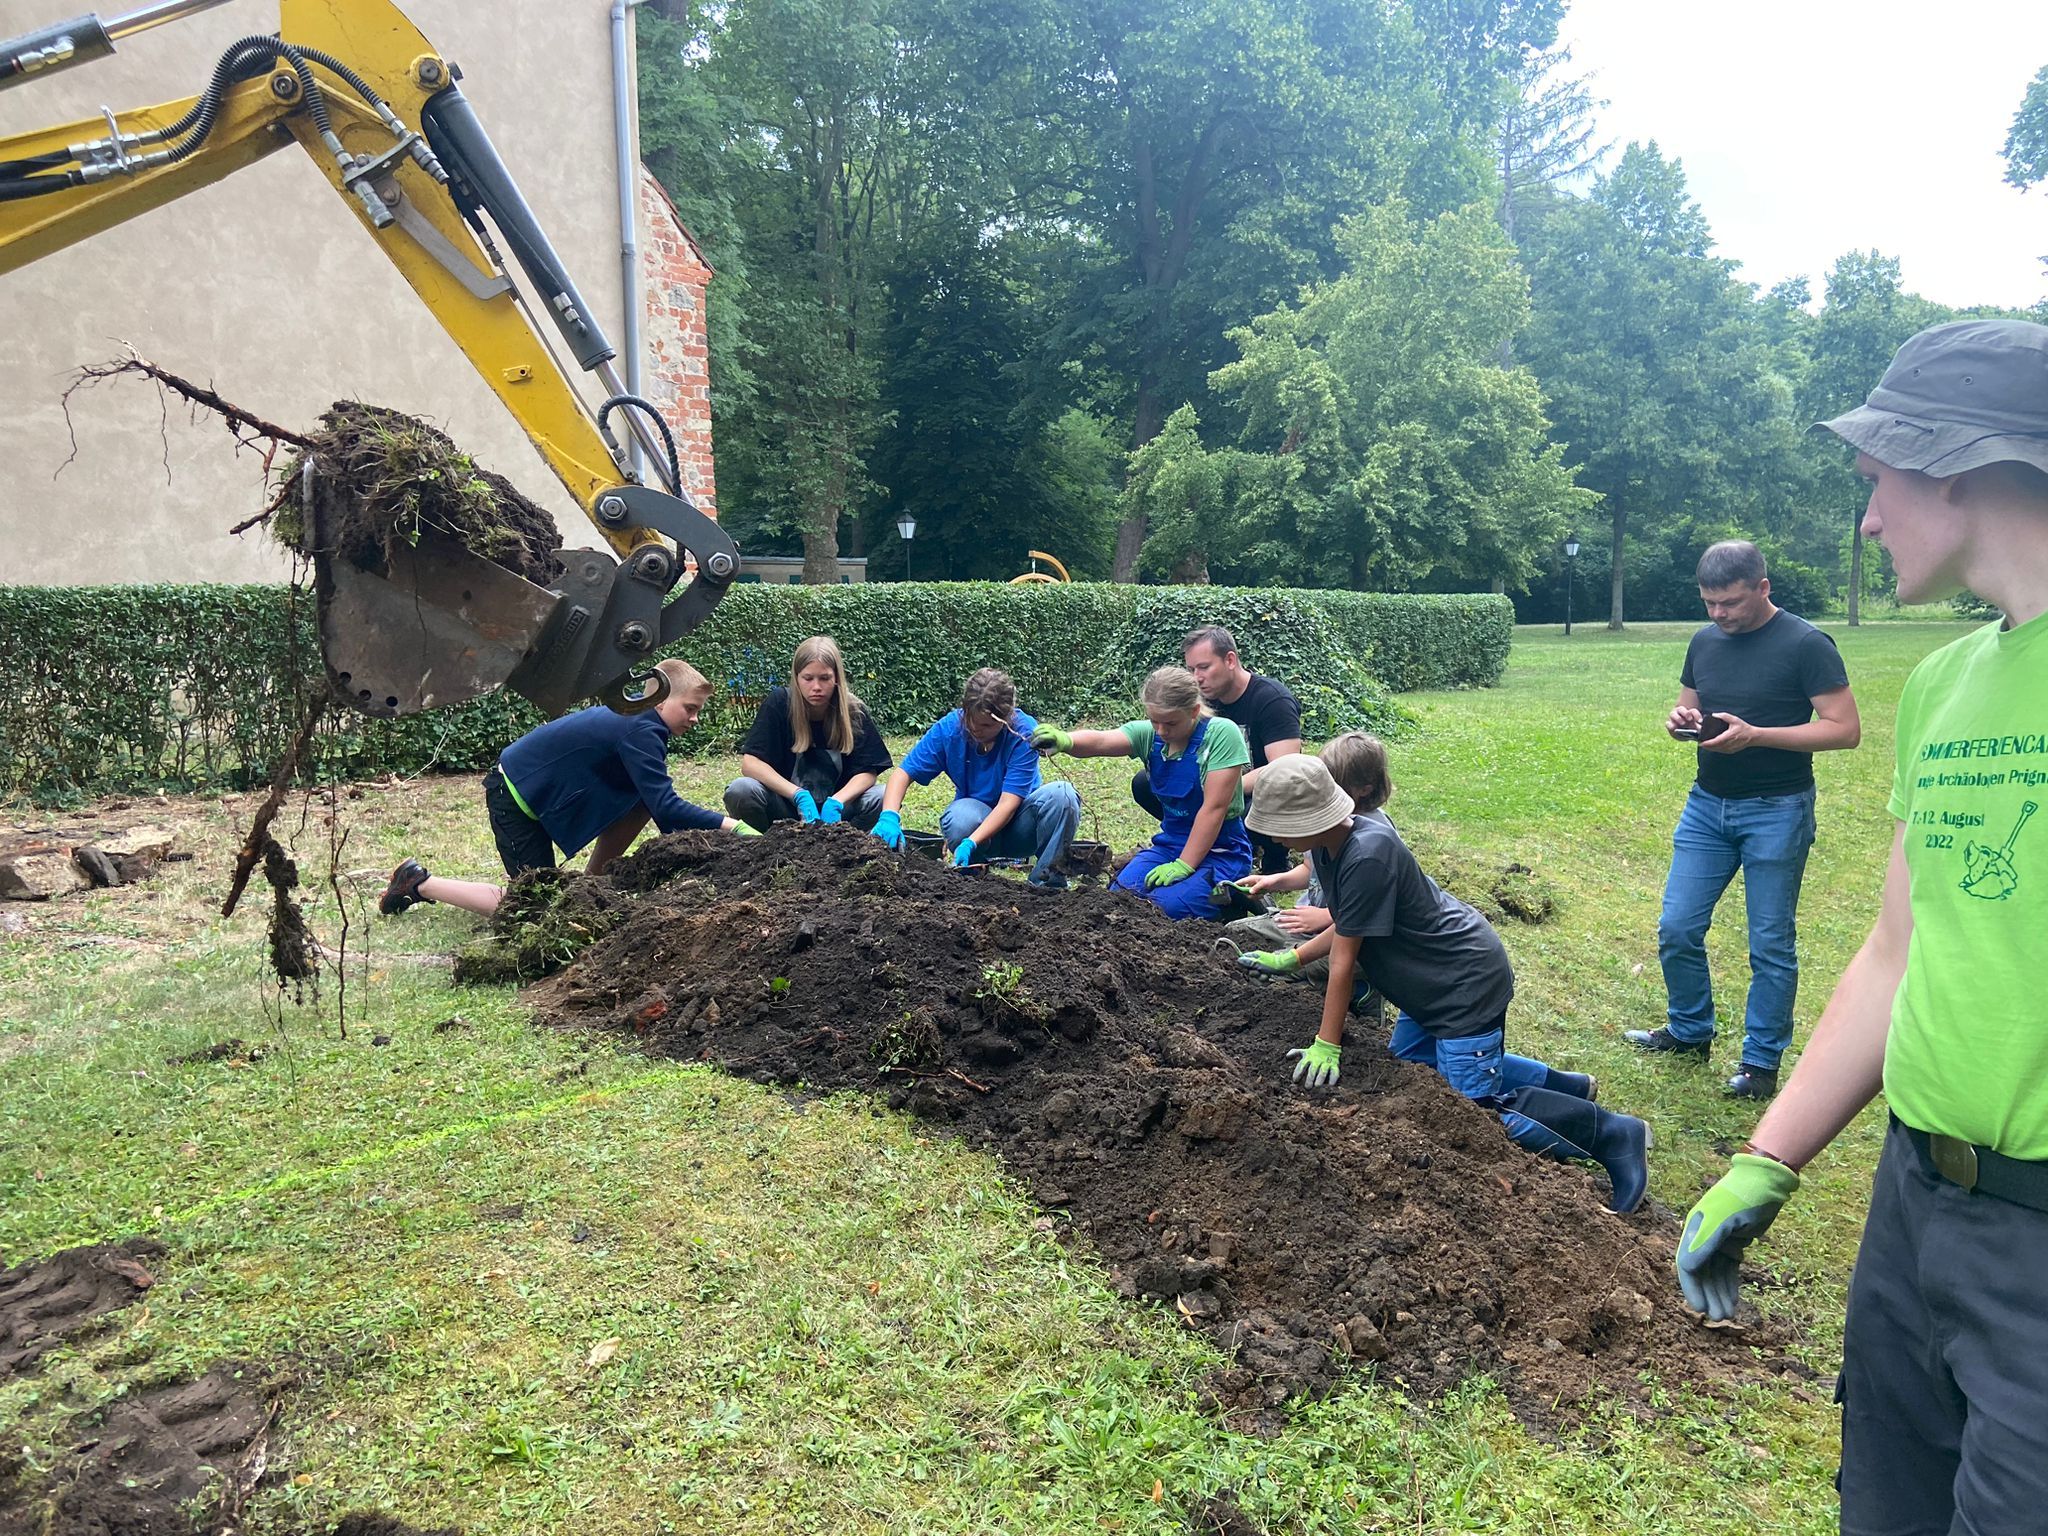 Du betrachtest gerade Sommercamp junger Archäologen in der Prignitz